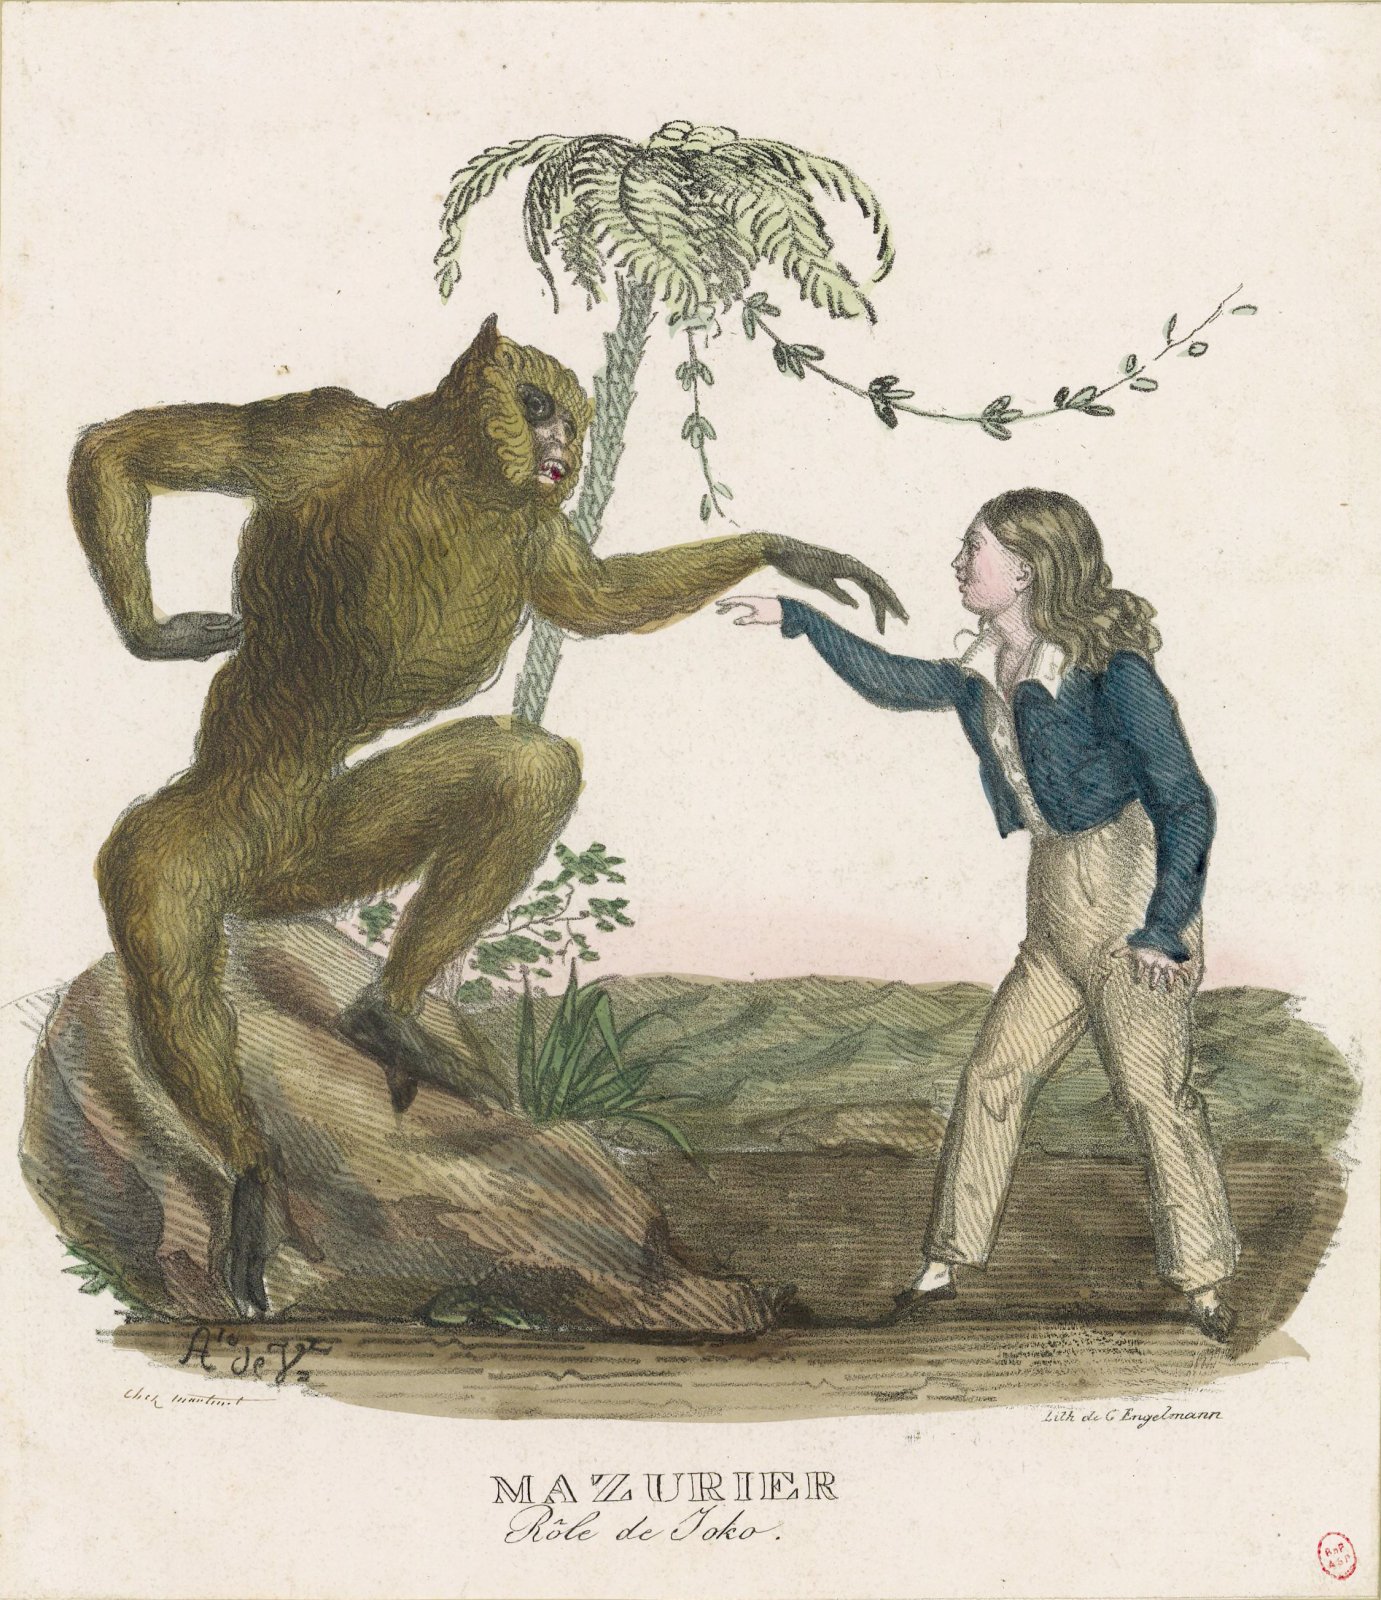 Godefroy Engelmann, Charles François Mazurier jako małpa Żoko (tu z dzieckiem uratowanym z katastrofy okrętu), 1825, litografia barwna, zbiory Bibliothèque nationale de France.